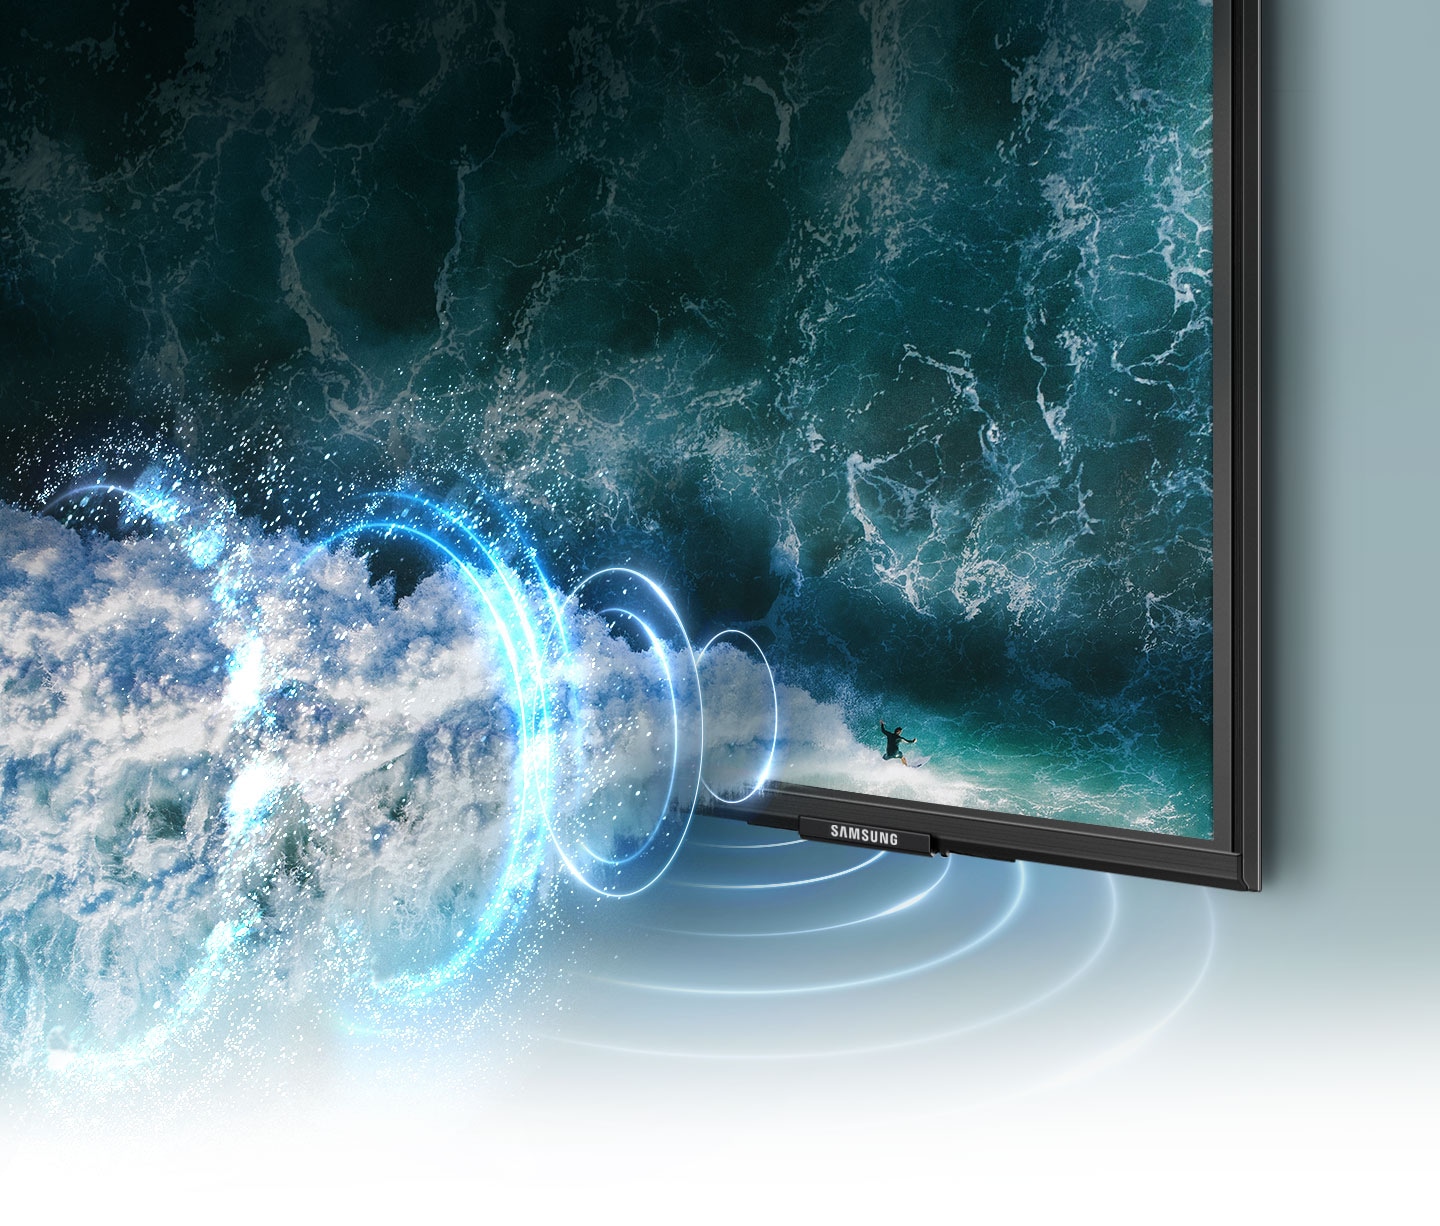 Đồ họa sóng âm thanh mô phỏng thể hiện công nghệ Object Tracking Sound khi nó theo chân người lướt trên màn hình TV.